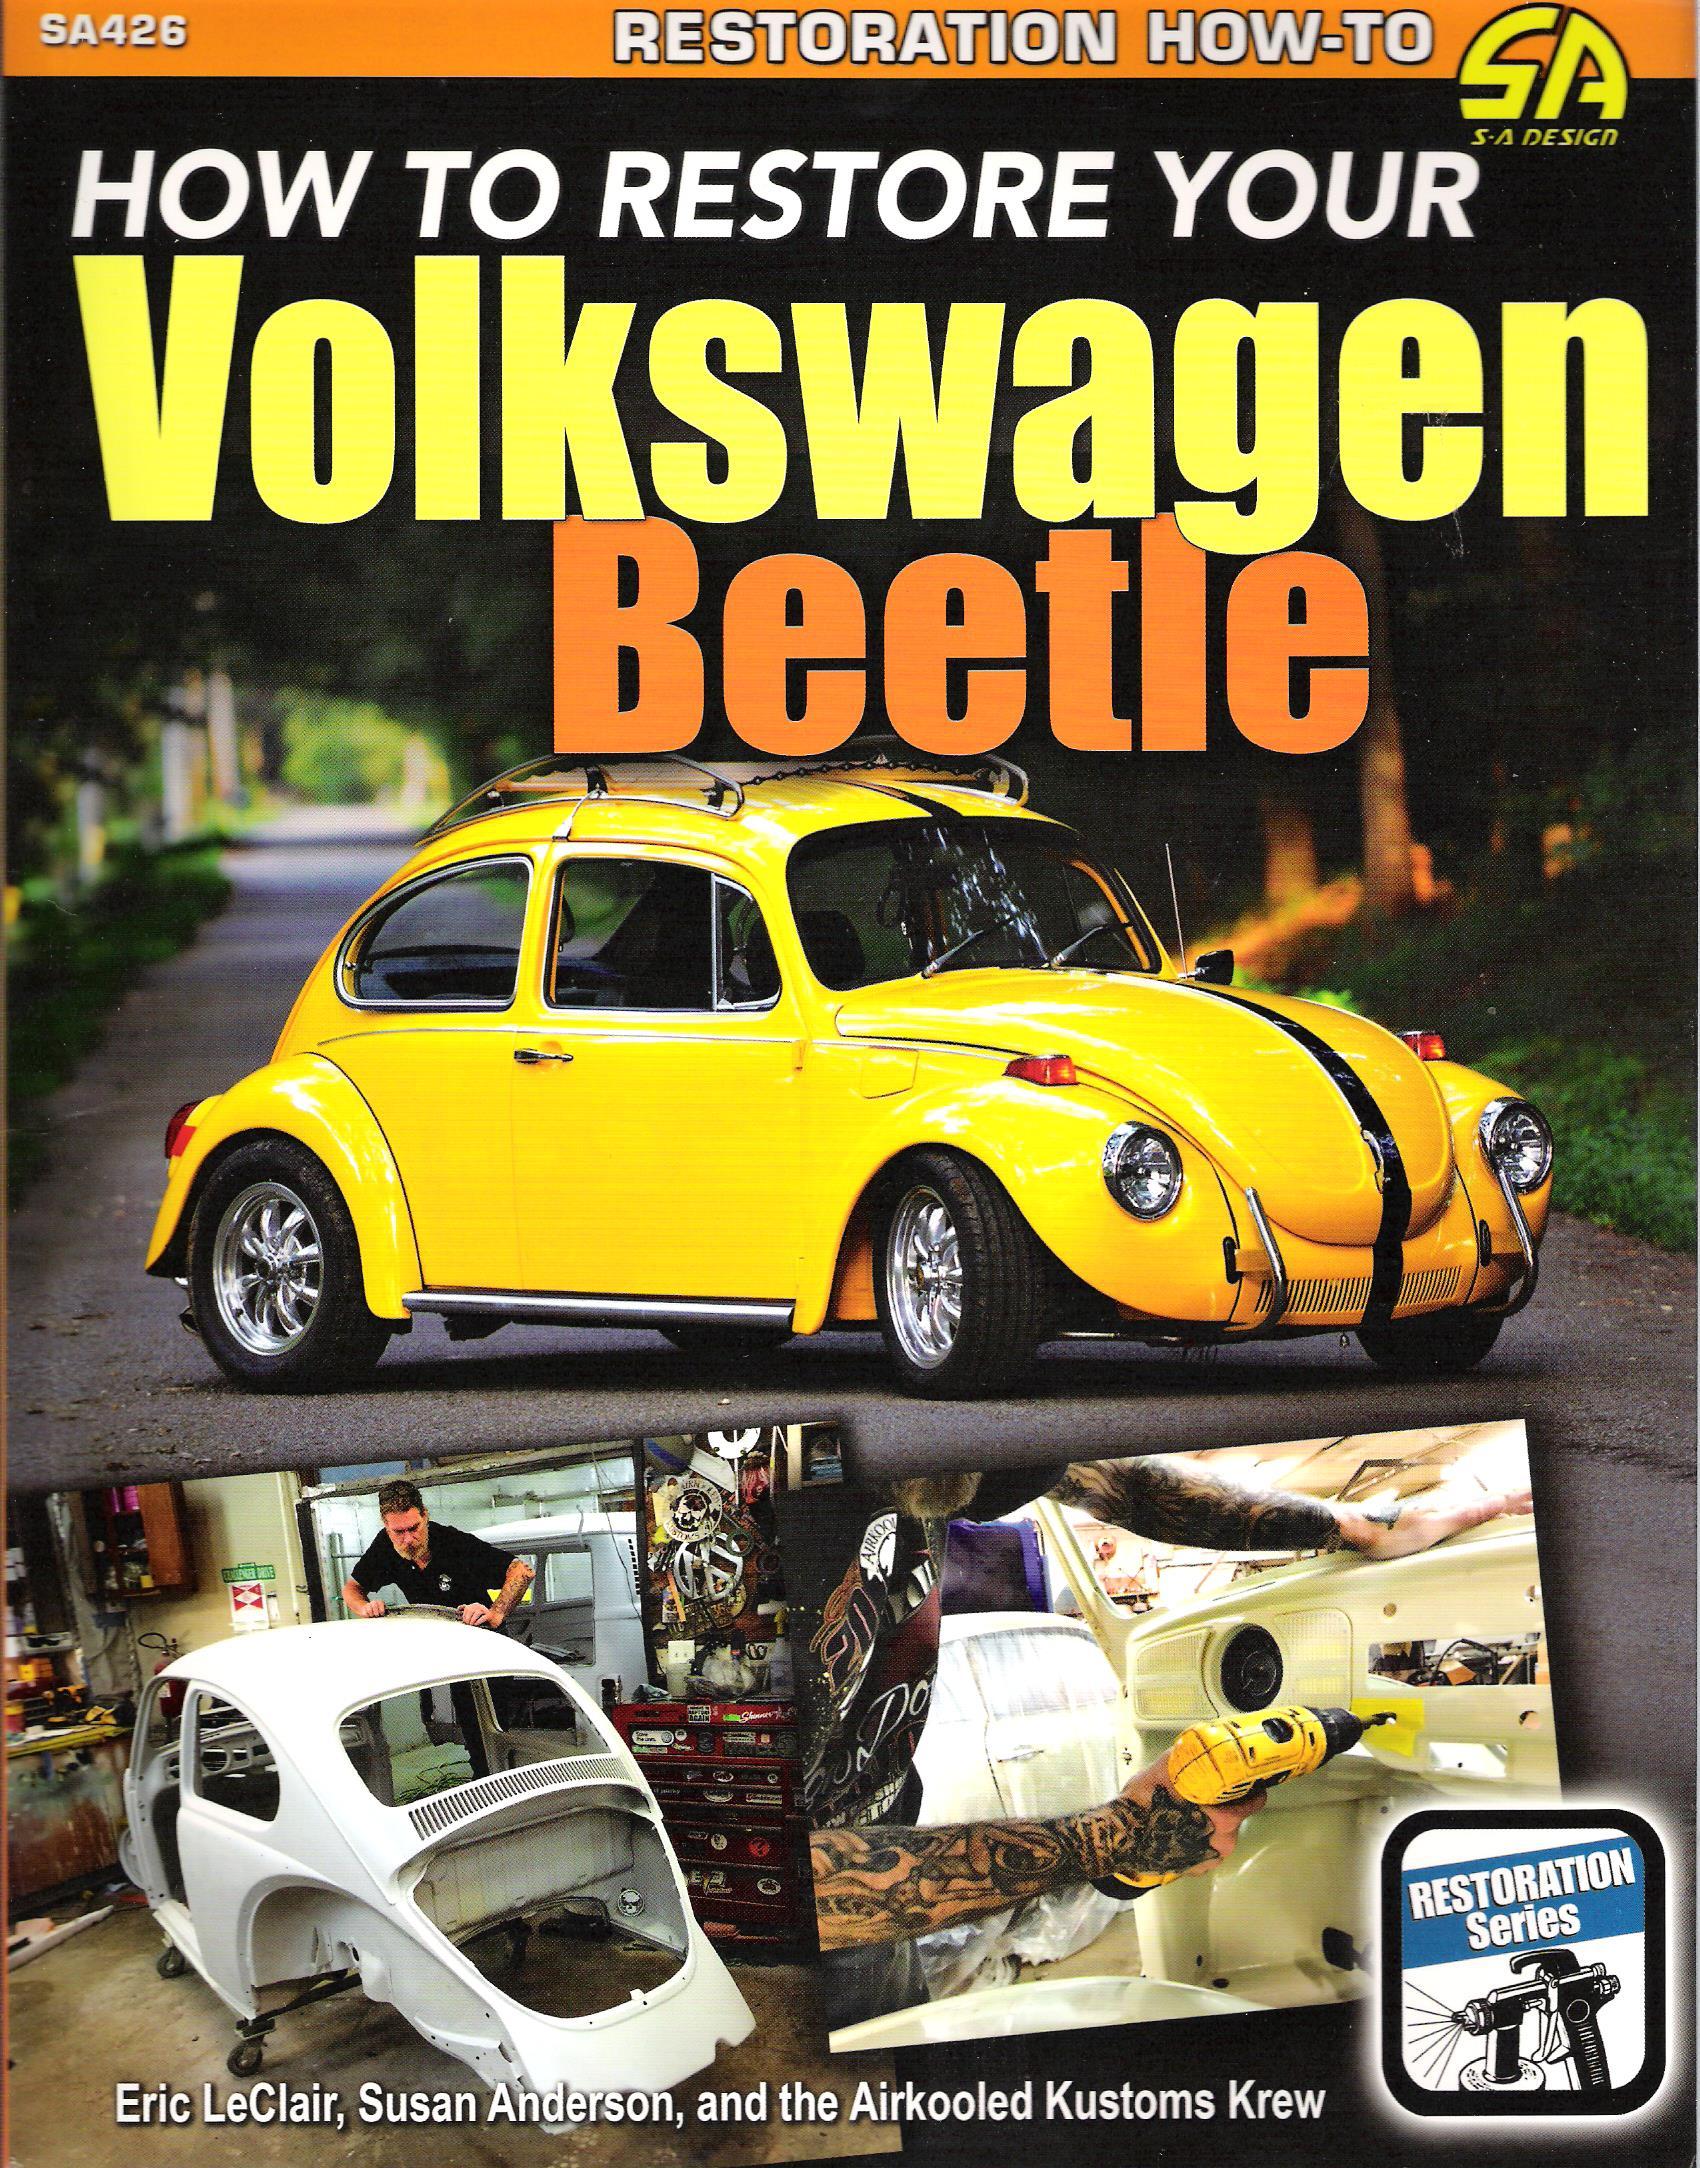 How to Restore Your Volkswagen Beetle